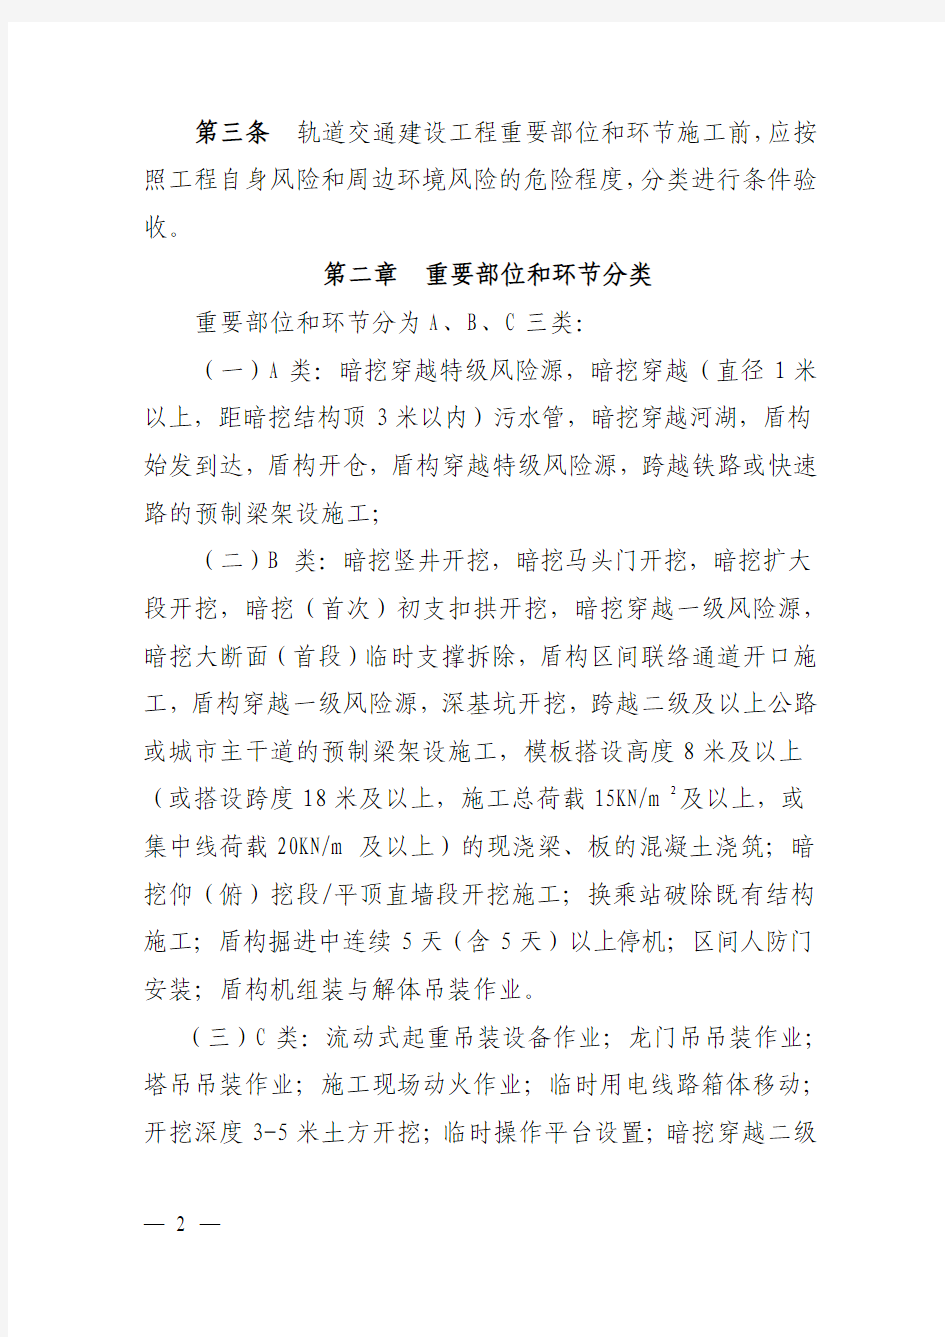 北京快轨关键部位和重要环节验收办法(2015年修订稿)